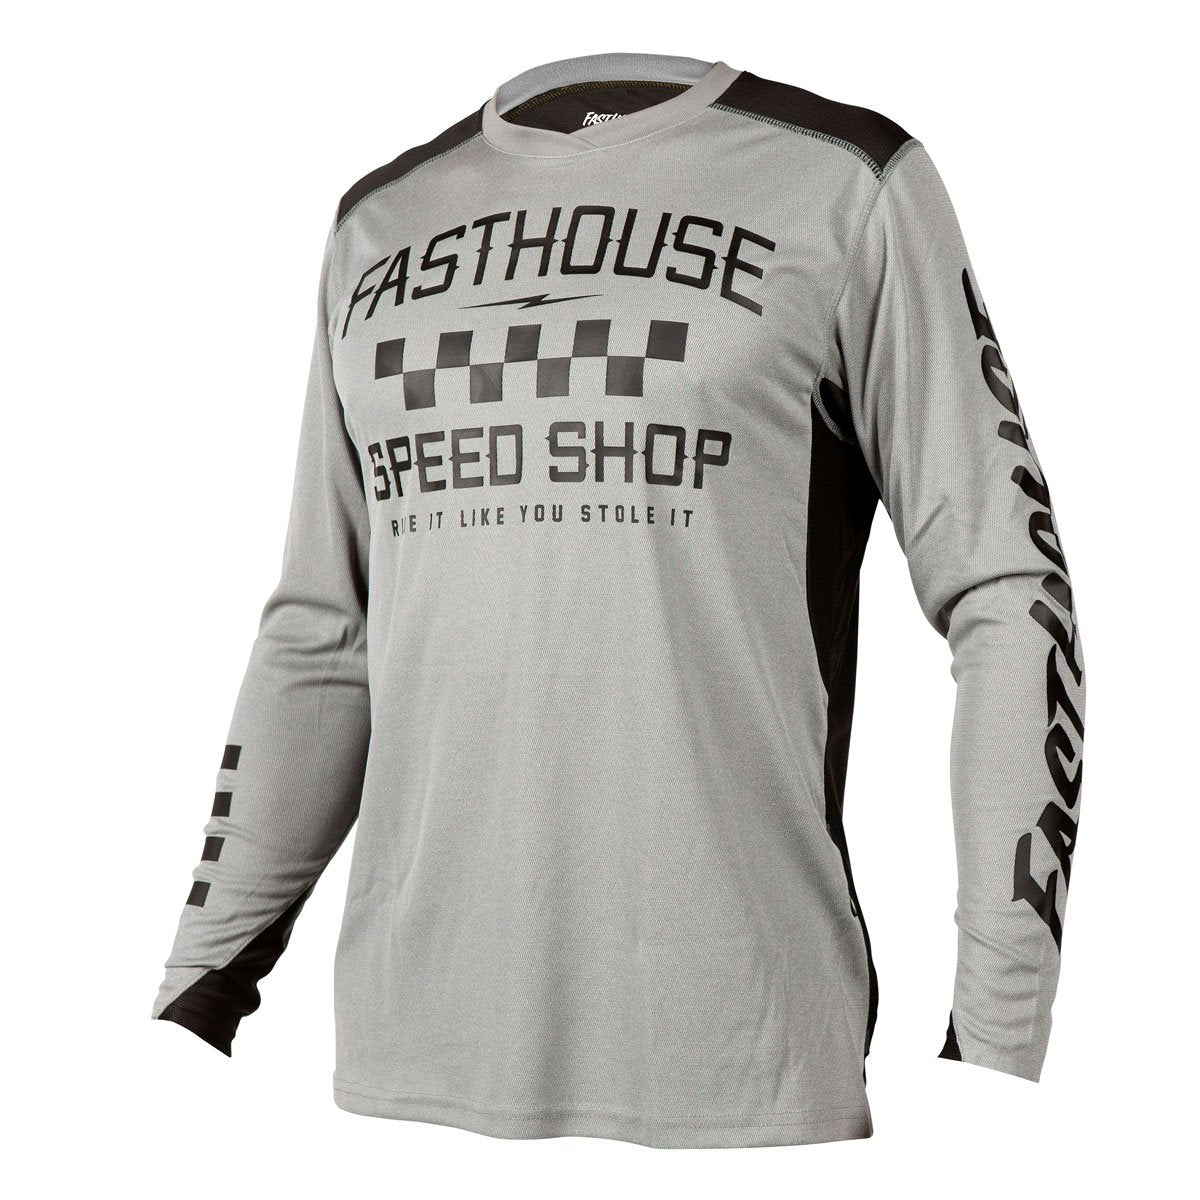 Fasthouse Alloy Roam Long Sleeve Jersey